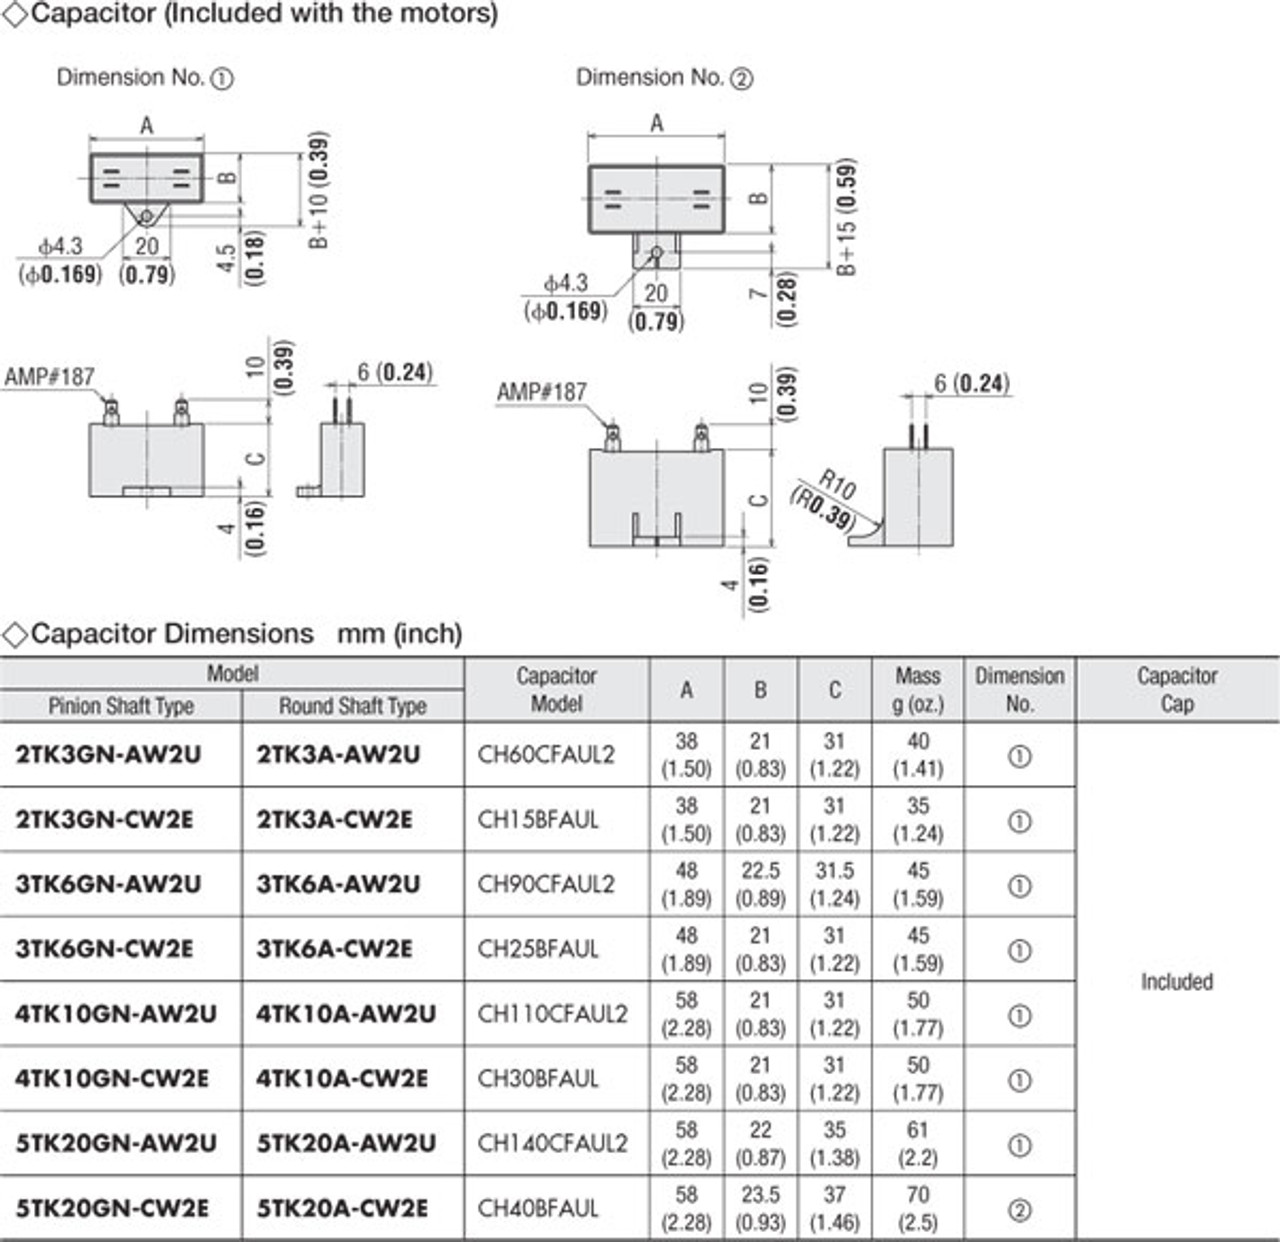 5TK20GN-CW2E / 5GN5SA - Capacitor